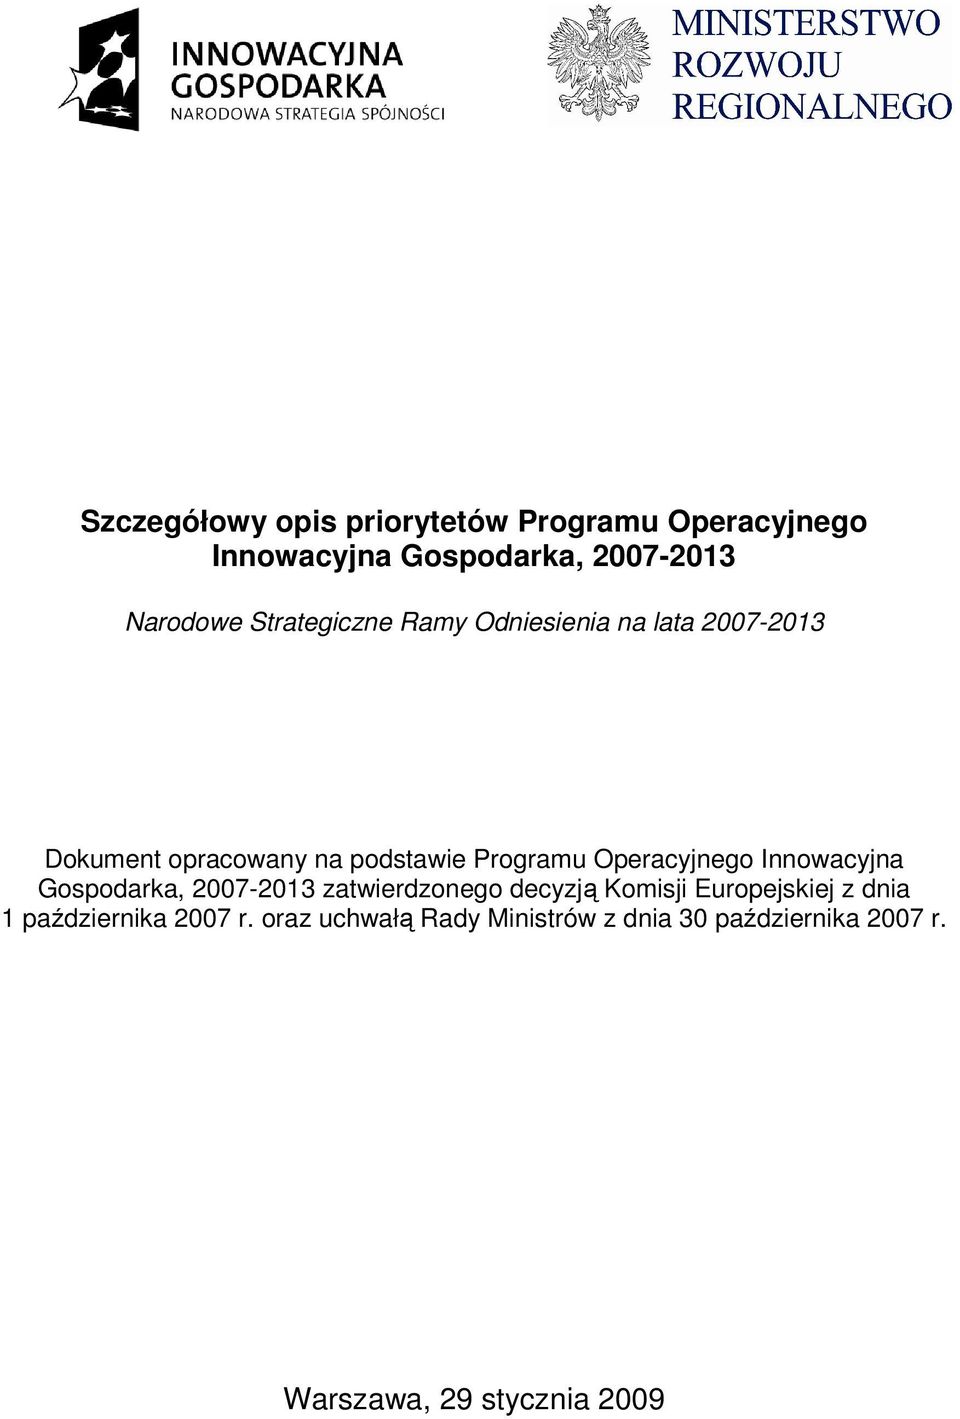 Operacyjnego Innowacyjna Gospodarka, 2007-2013 zatwierdzonego decyzją Komisji Europejskiej z dnia